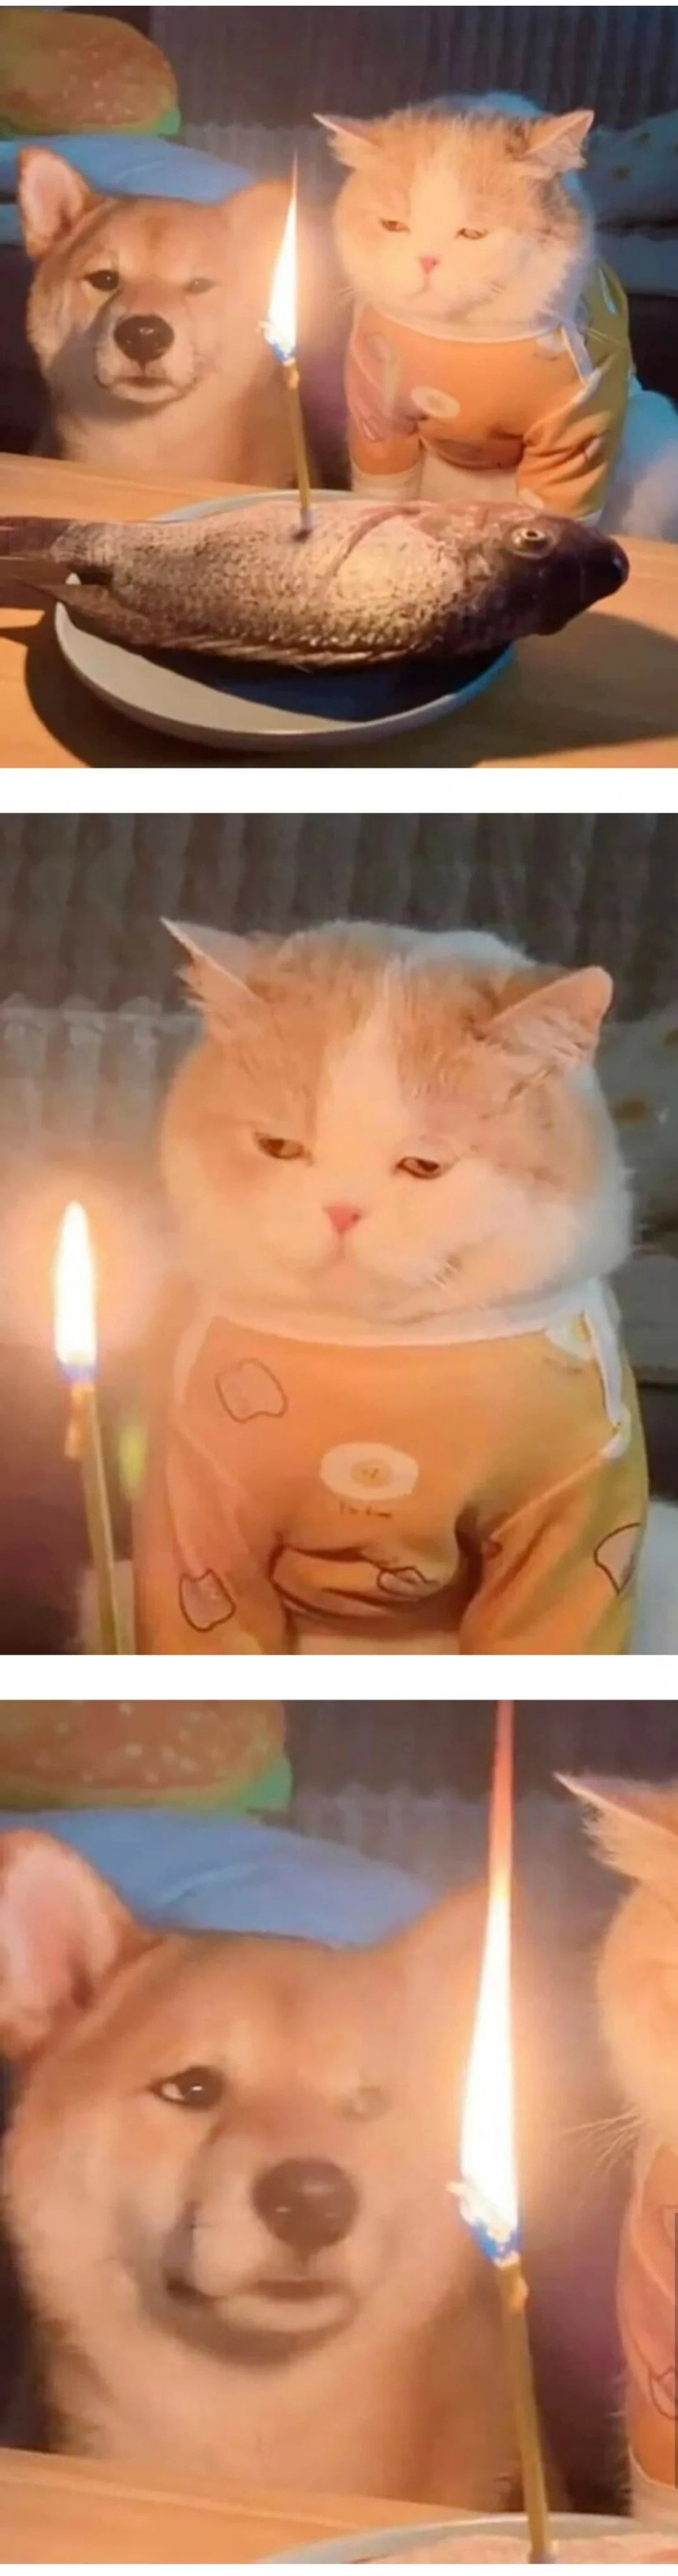 싱글벙글 급하게 차린 고양이 생일상.jpg(0)